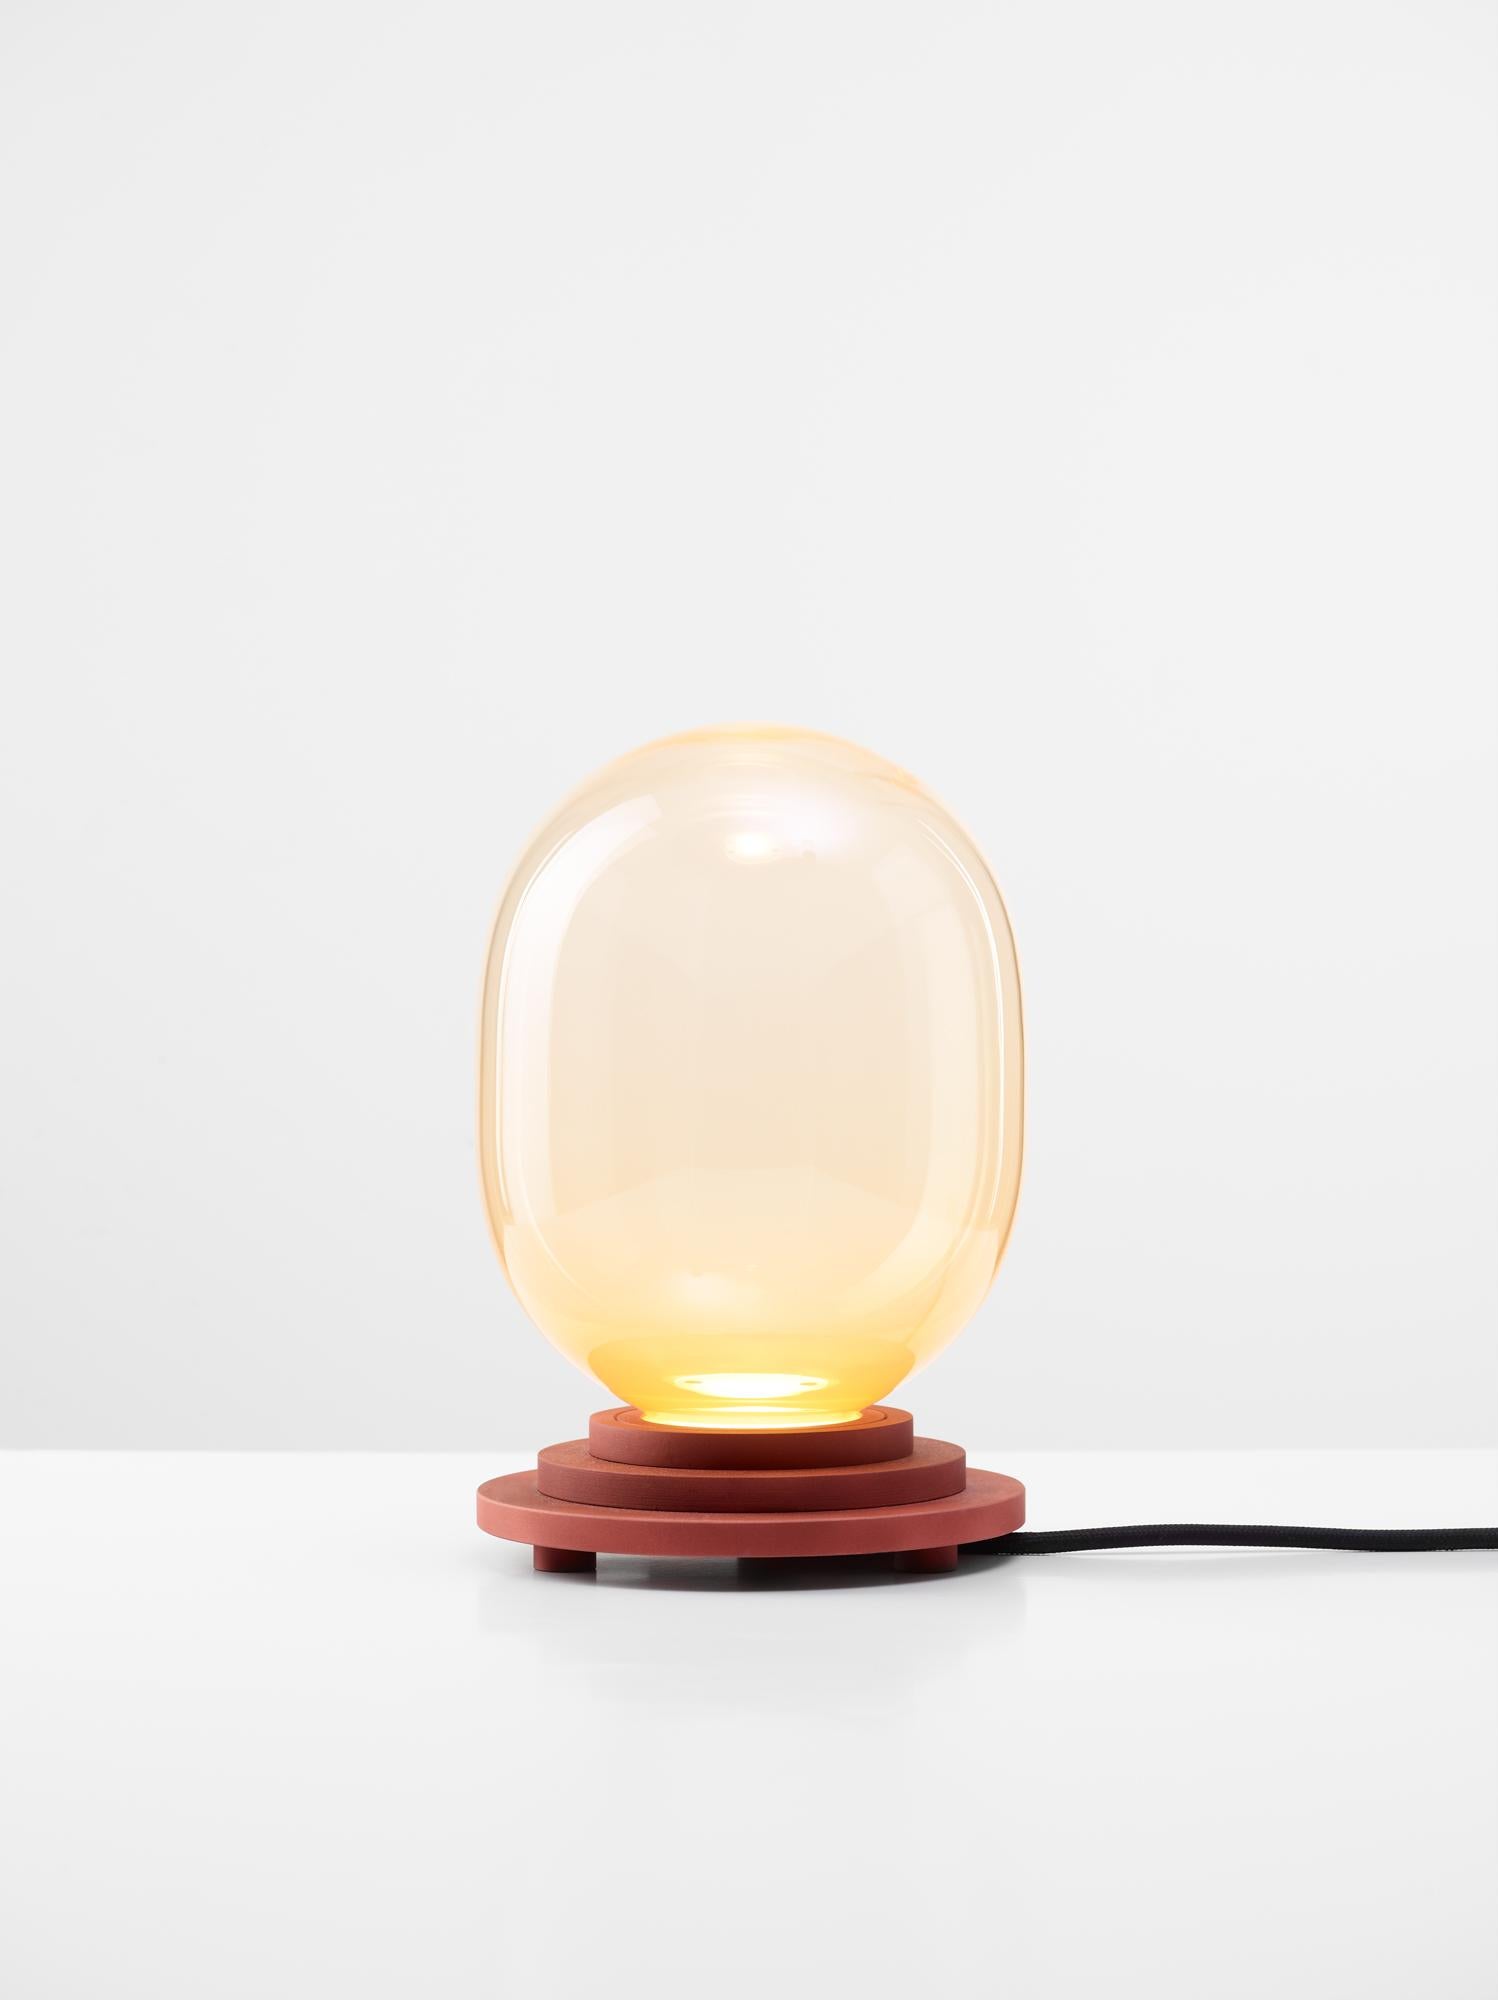 Lampe de table à capsule Strato orange par Dechem Studio
Dimensions : D 15 x H 22 cm
MATERIAL : Aluminium, verre.
Également disponible : Différentes couleurs disponibles

Les différentes formes de capsules et de sphères contrastent avec les